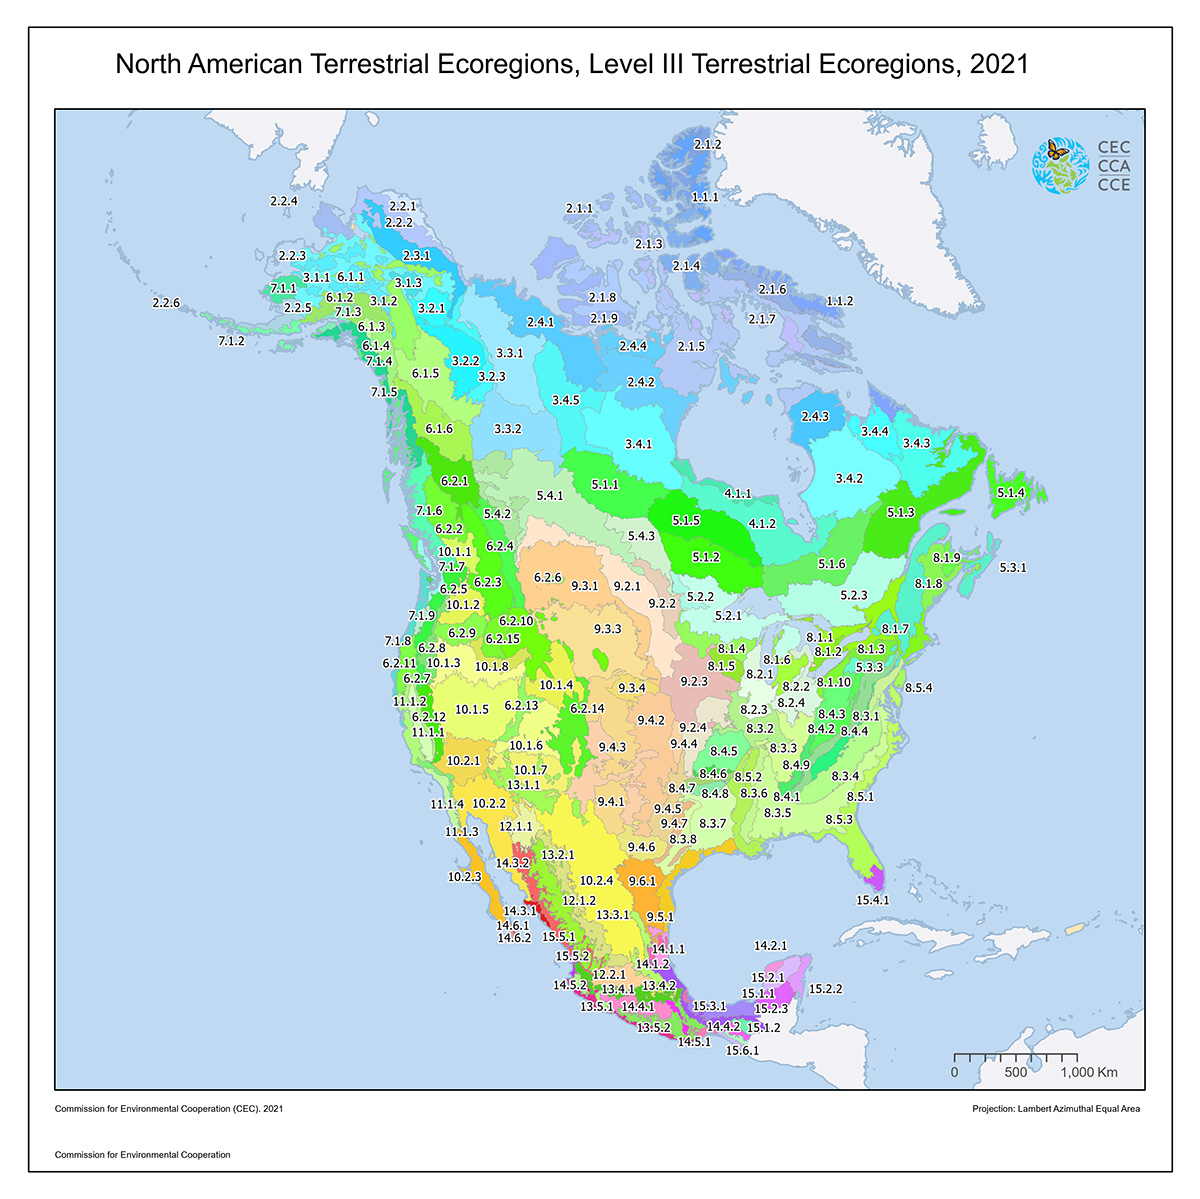 Atlas environnemental de l'Amérique du Nord - CCE